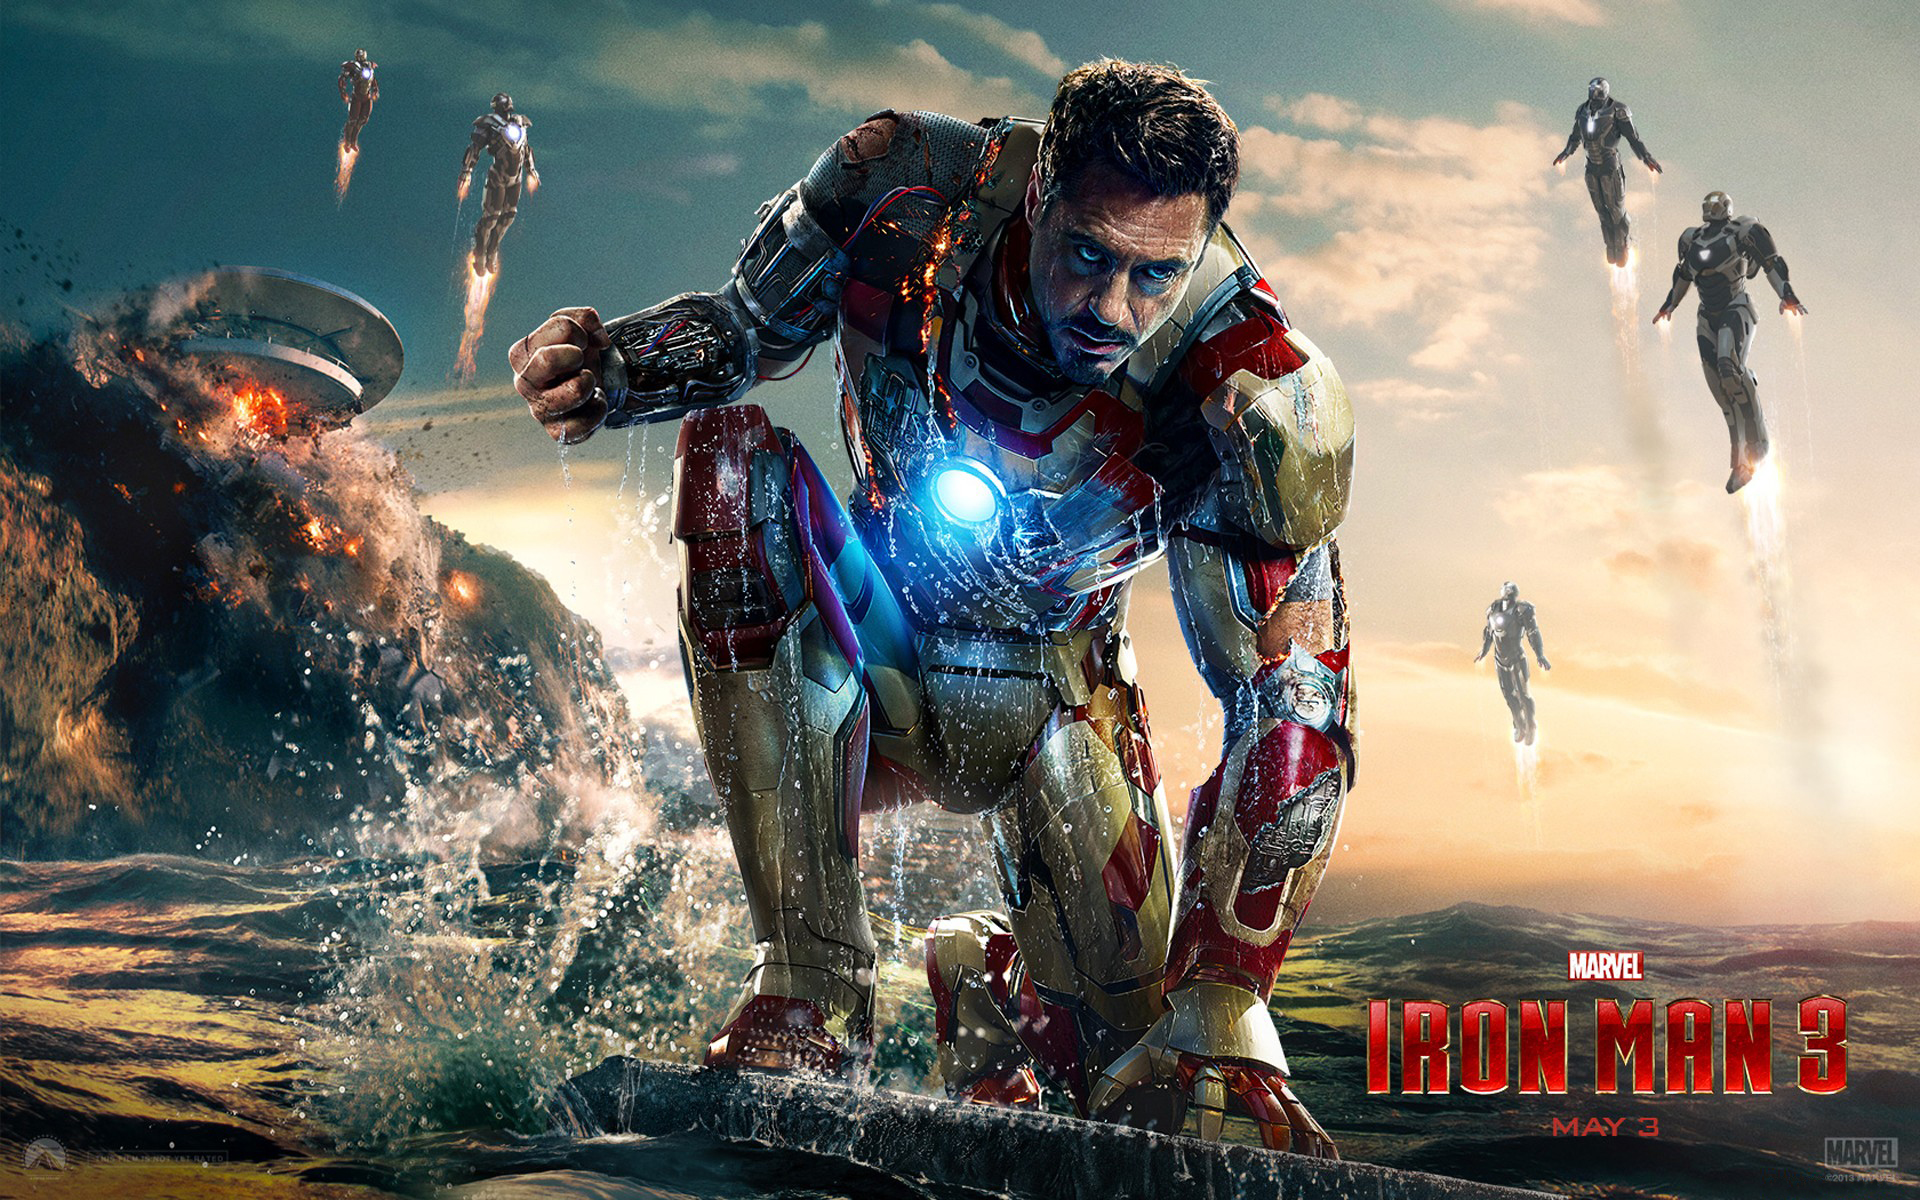 Robert Downey Jr. As Iron Man